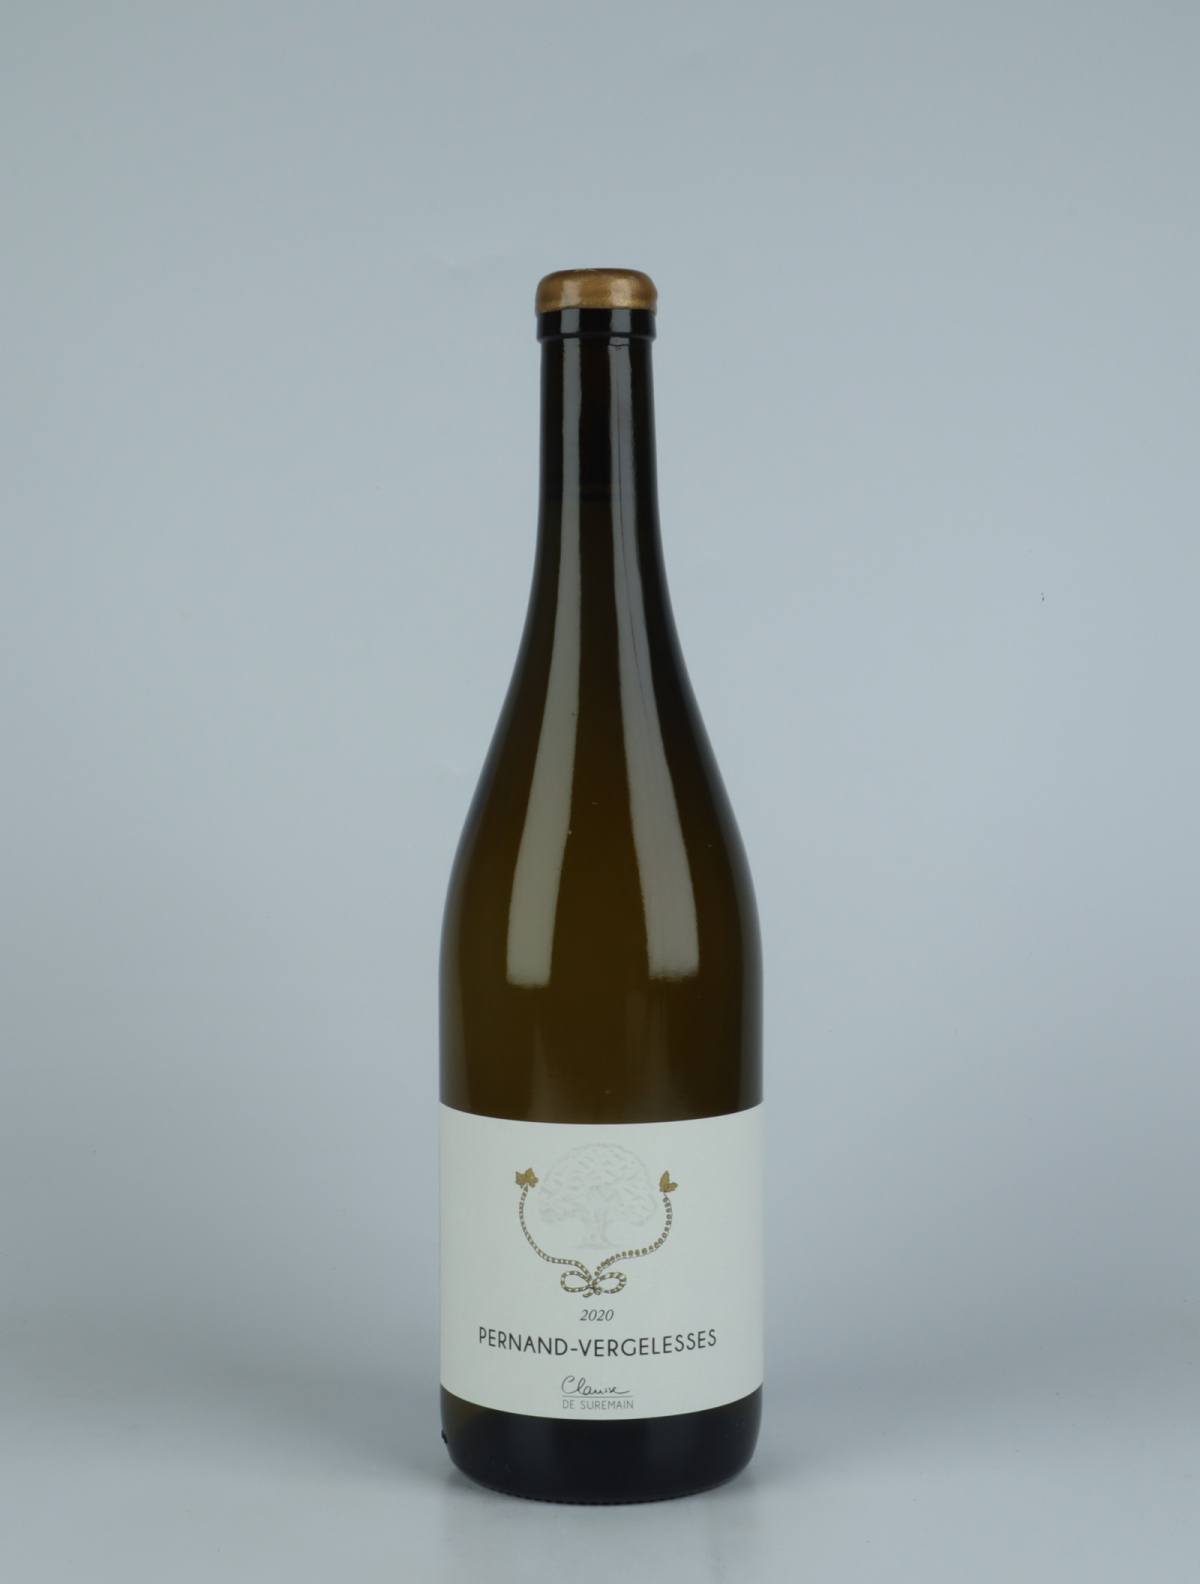 En flaske 2020 Pernand-Vergelesses Hvidvin fra Clarisse de Suremain, Bourgogne i Frankrig